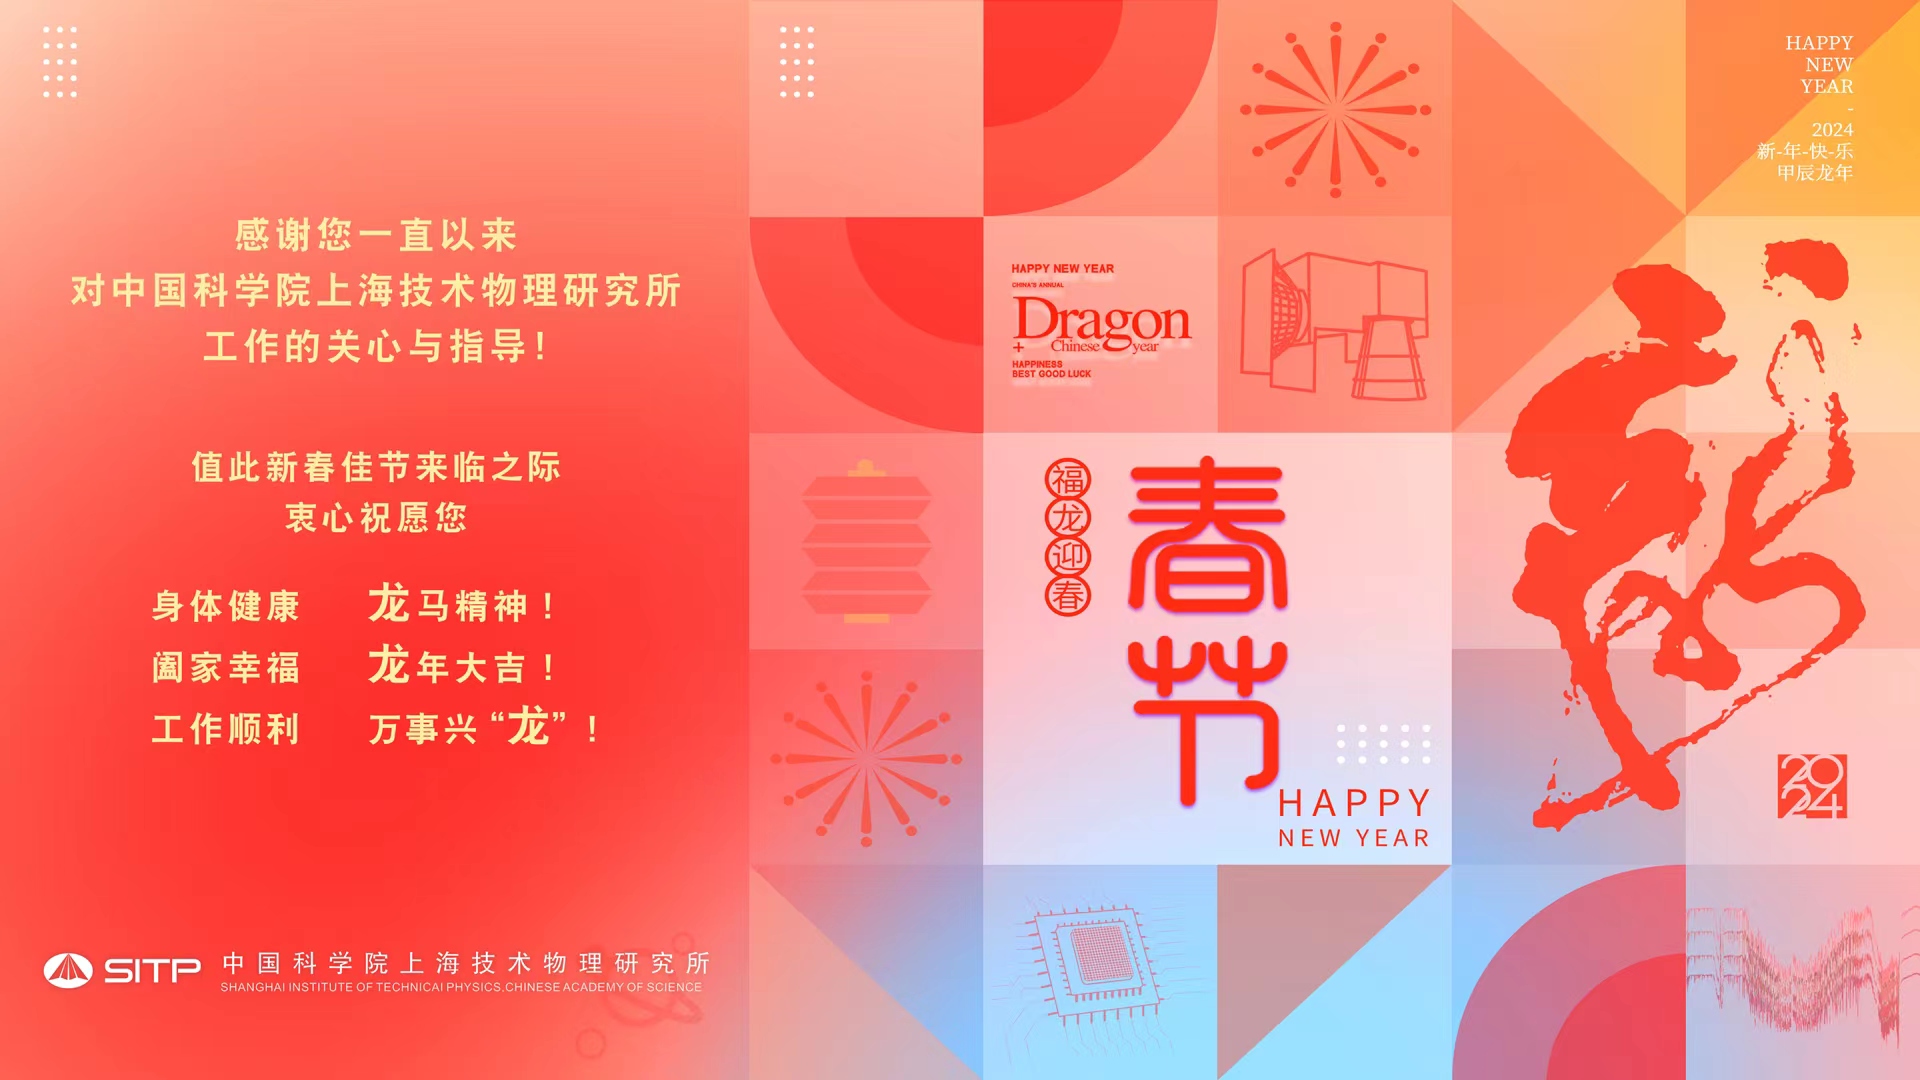 上海技术物理研究所祝您新春快乐，龙年大吉！<br/><br/>